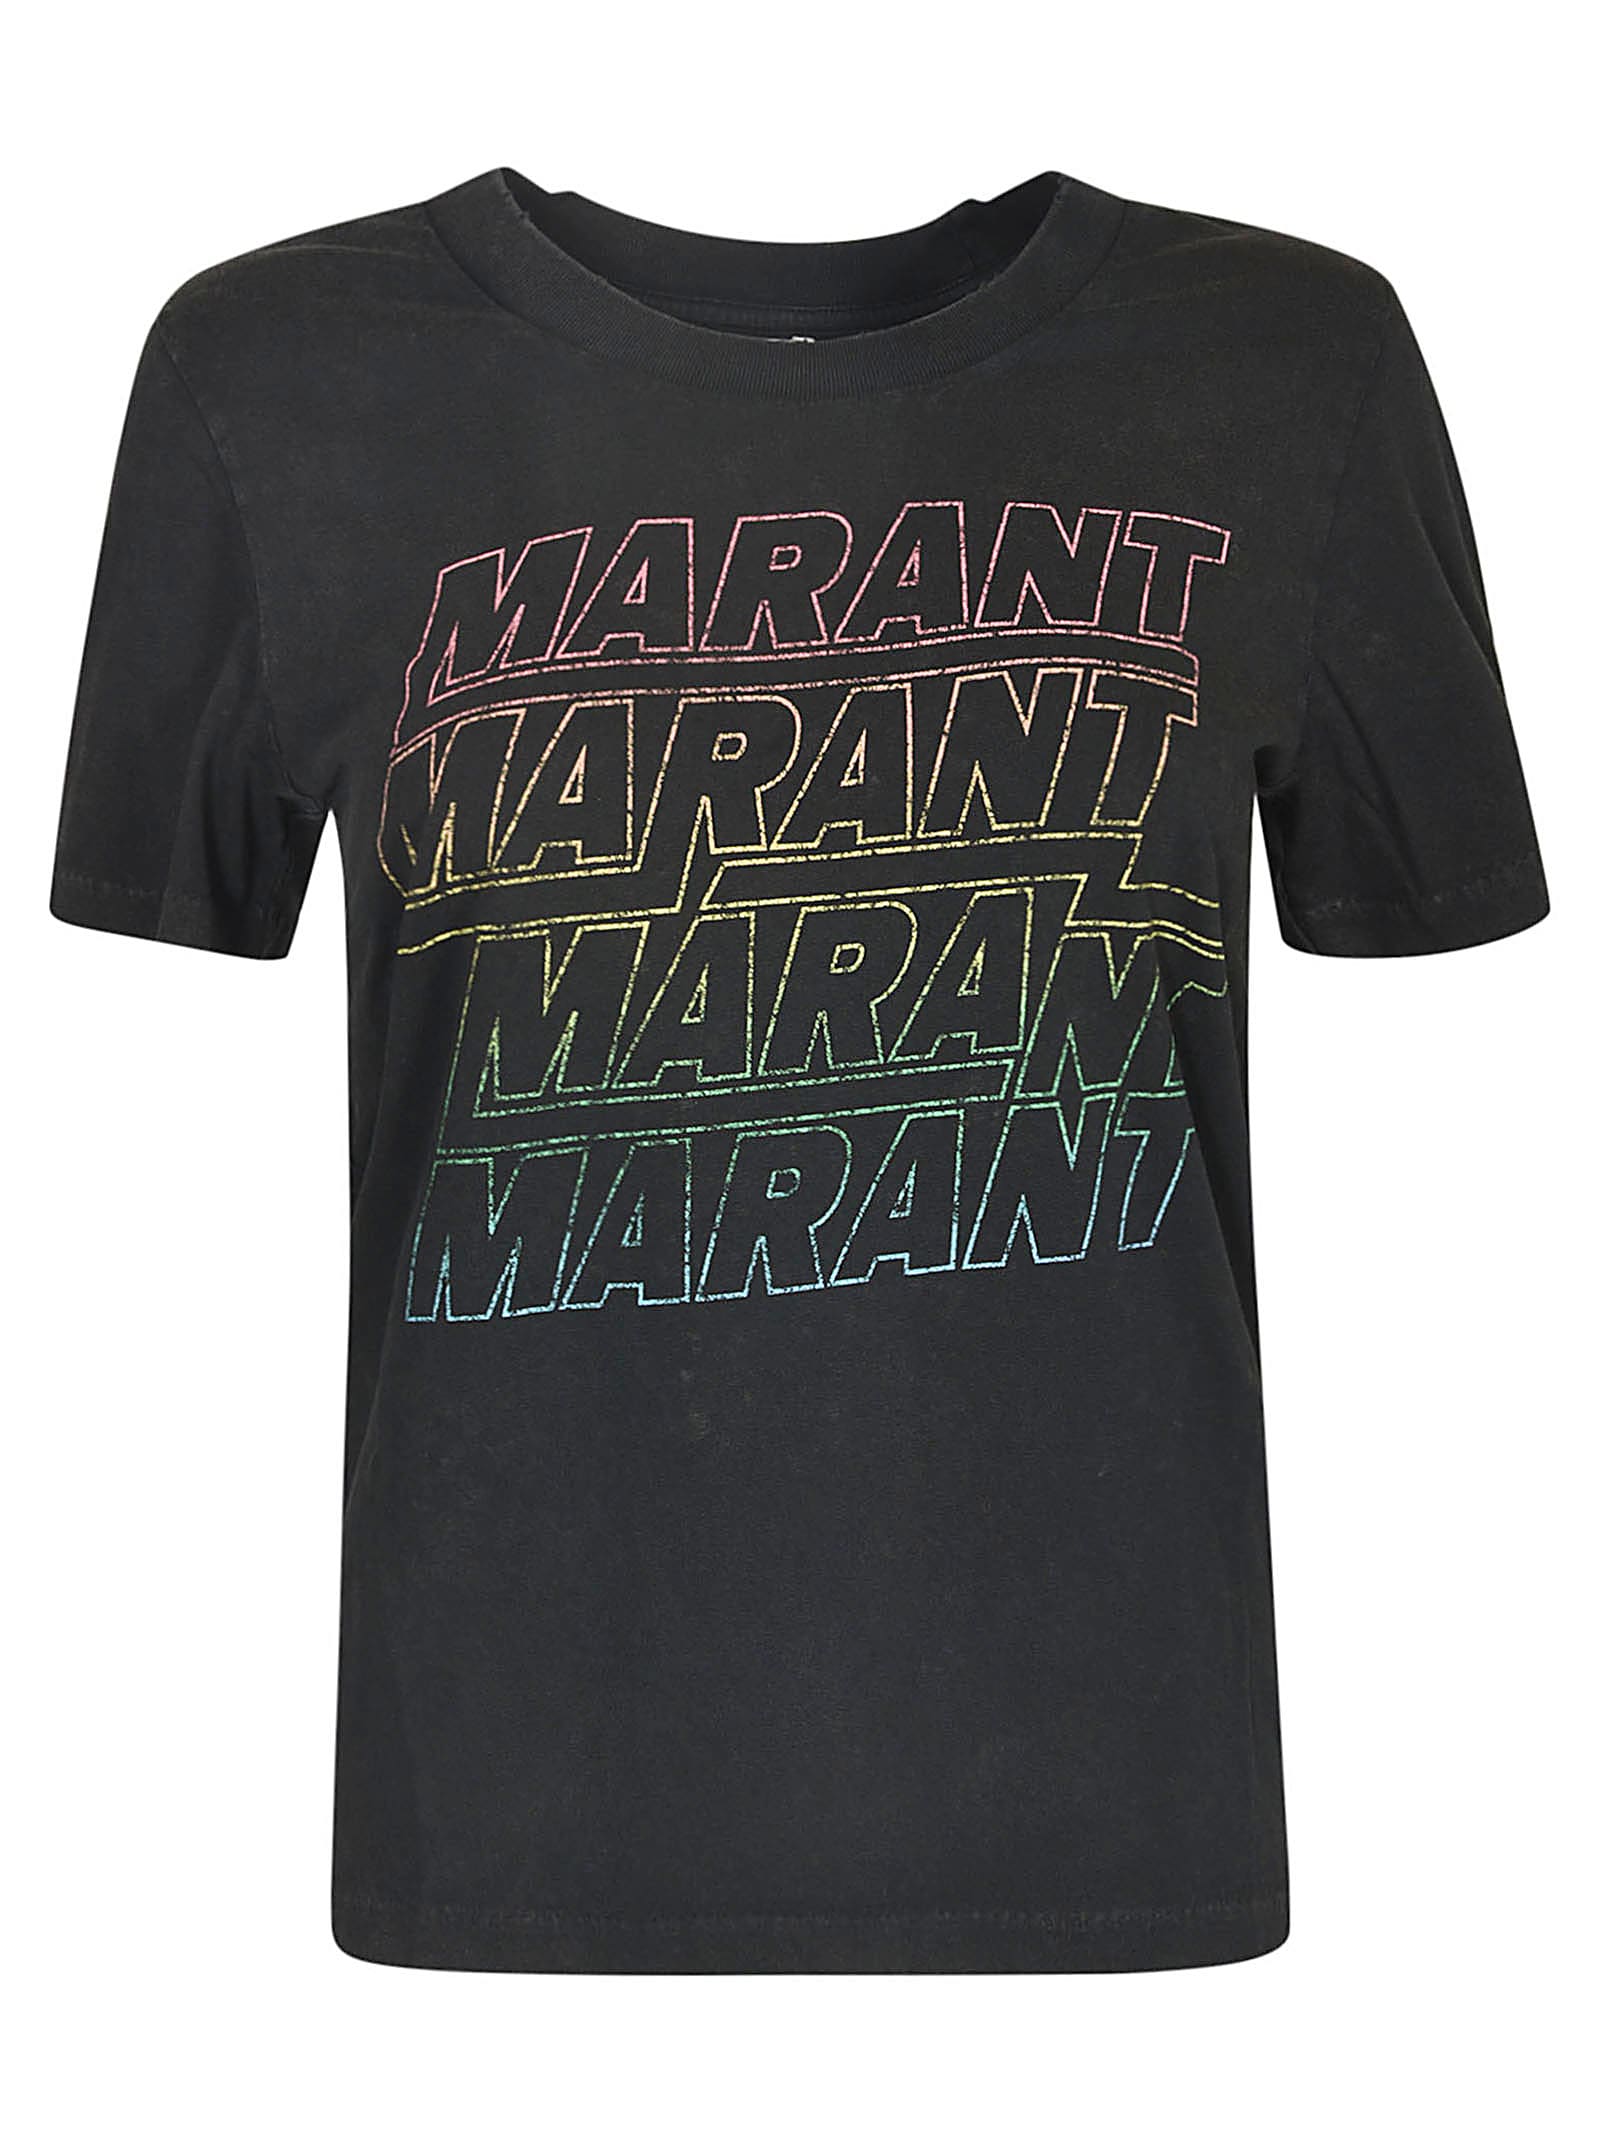 Marant Étoile Ziliani T-shirt